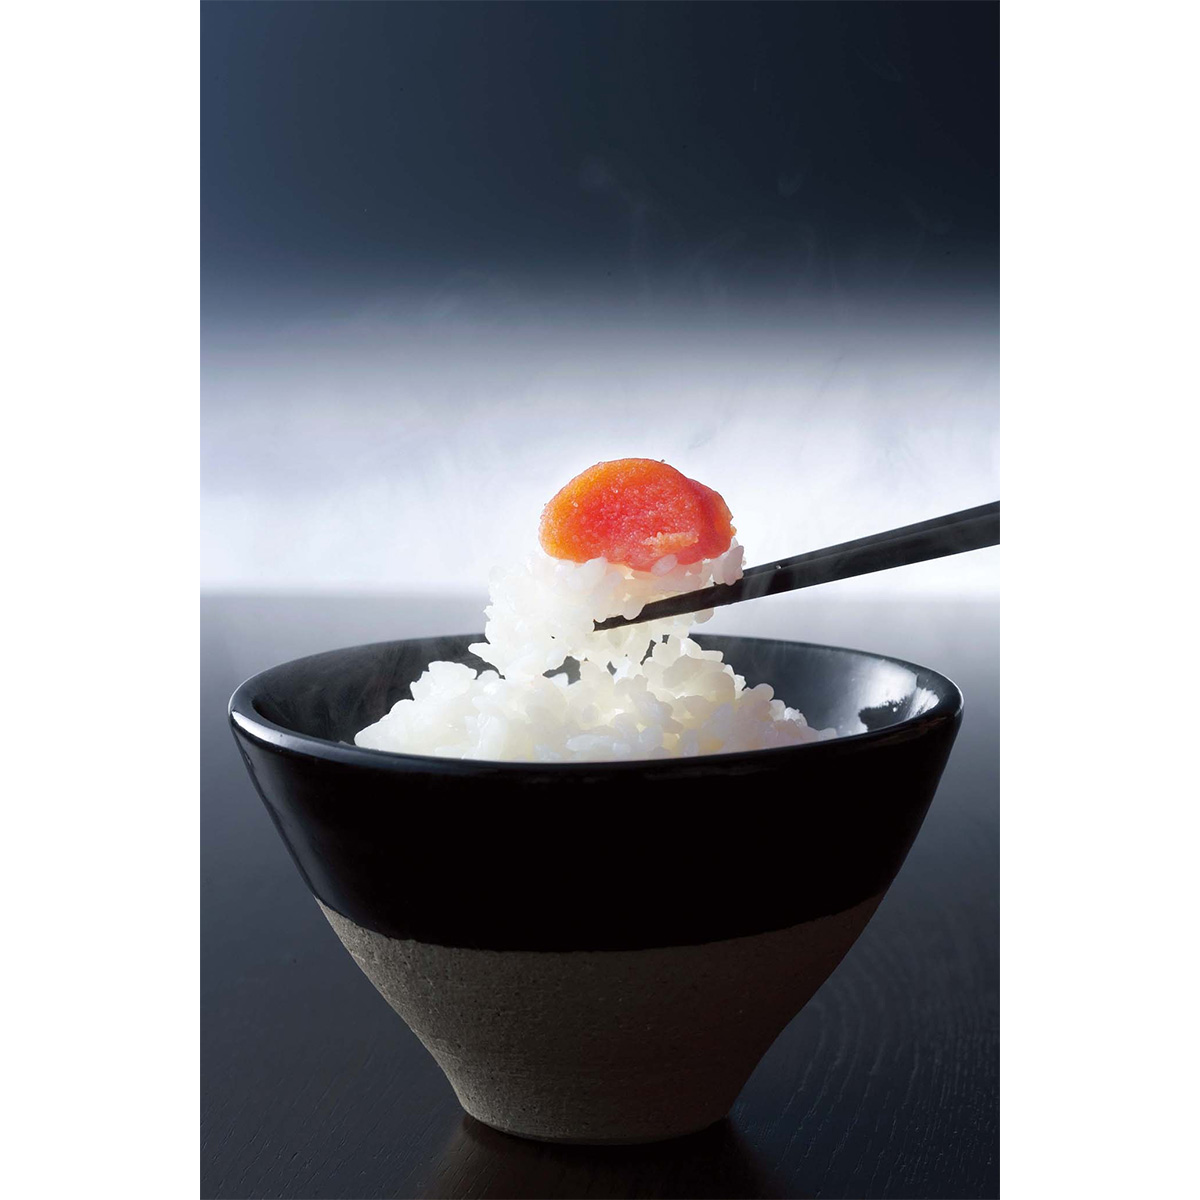 [19年度 三菱炊飯器最上位モデル]IH炊飯器 本炭釜 5.5合炊き KAMADO 羽釜タイプ 日本製 白真珠